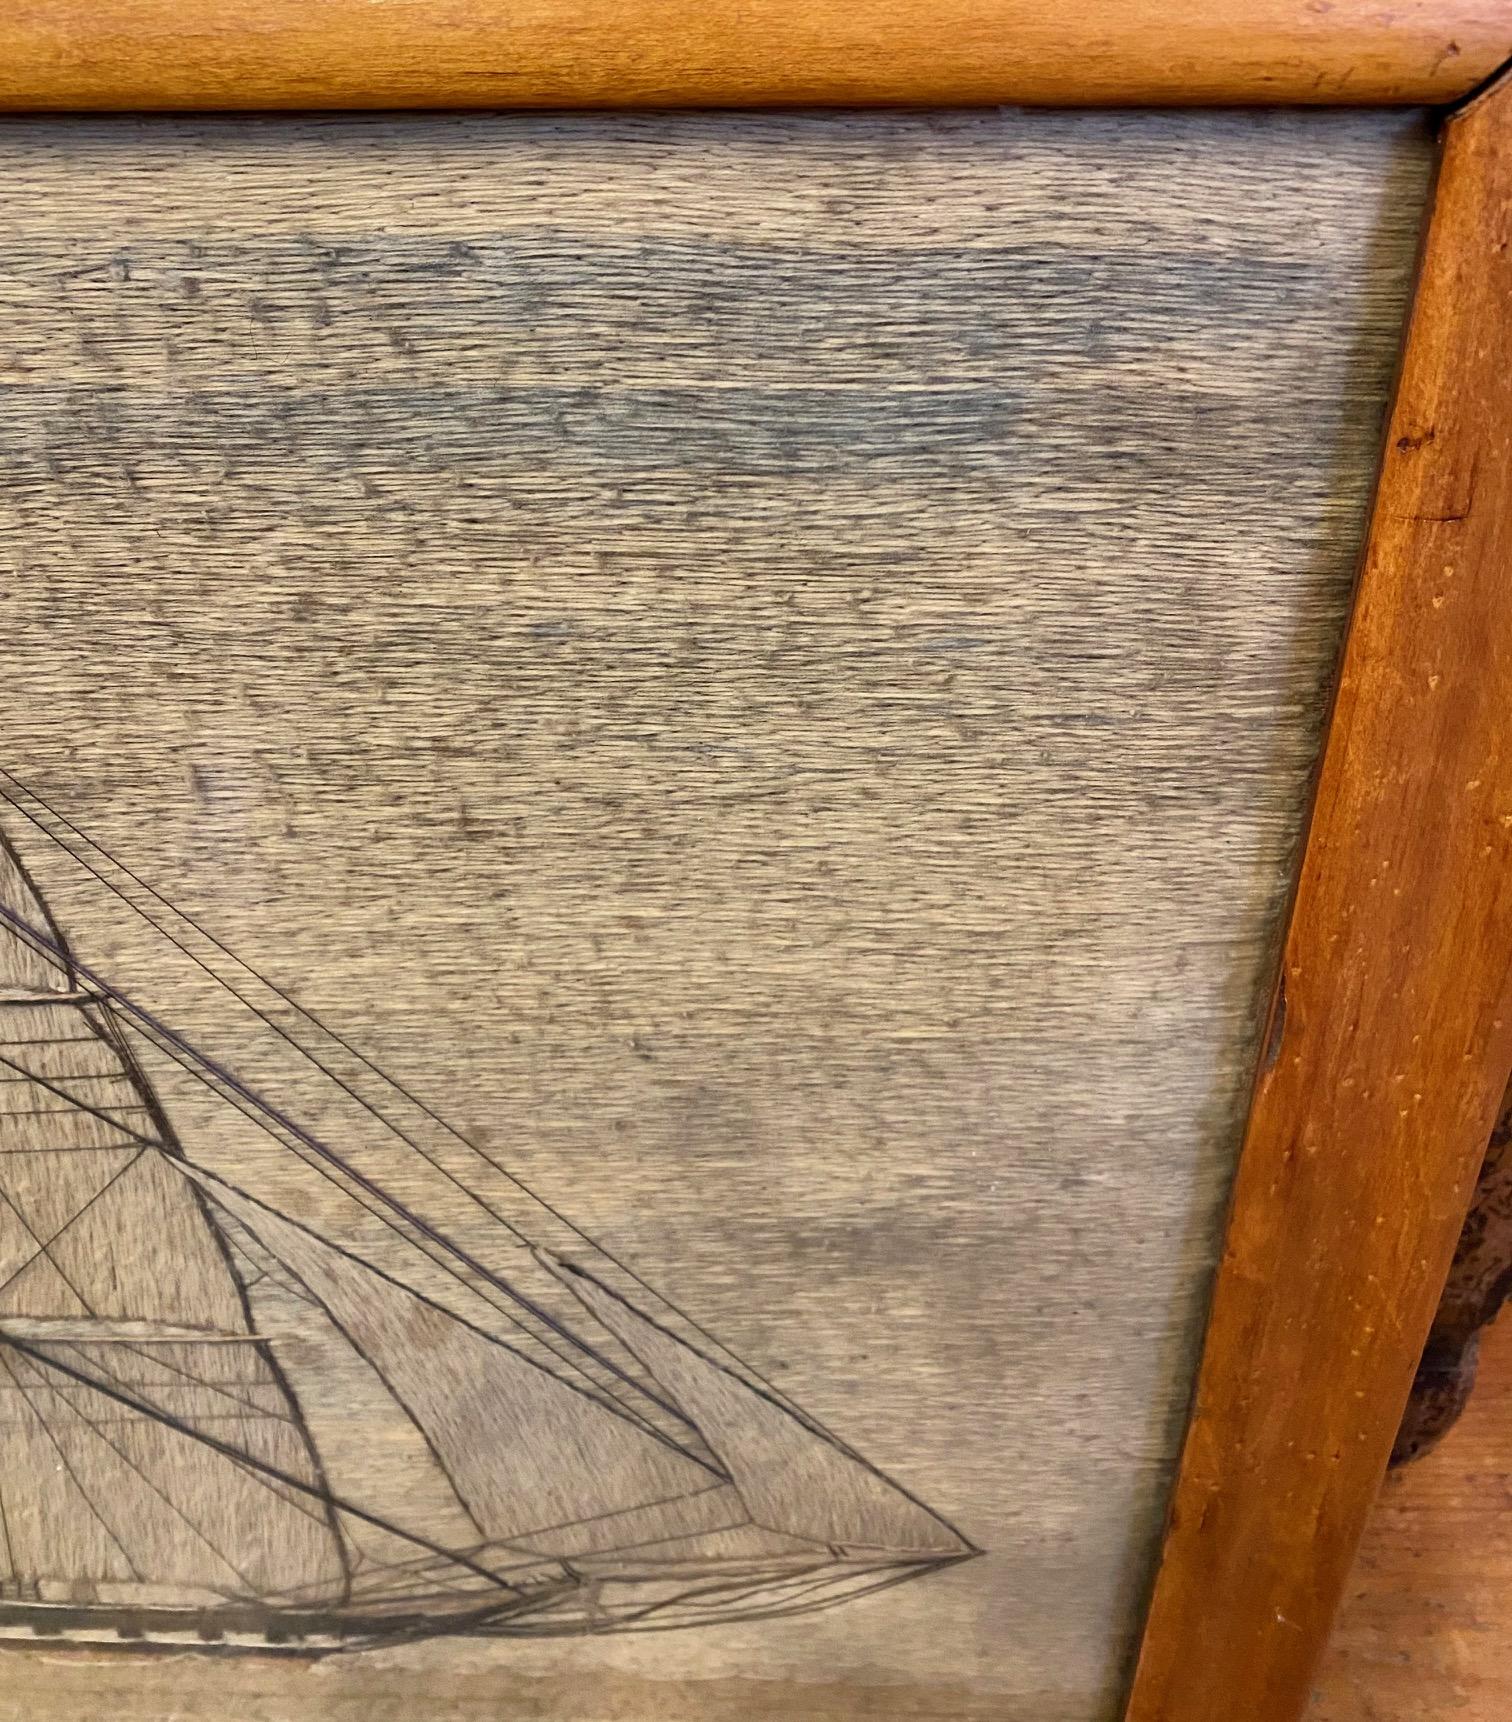 19. Jahrhundert Sailor's Woolie einer Fregatte, um 1840, ein britischer Matrose handgefertigte Wollarbeit Darstellung eines britischen Single-Decker-Fregatte unter vollen Segeln, fliegende Fahne der roten Flotte am Heck - ein großes Schiff gegen